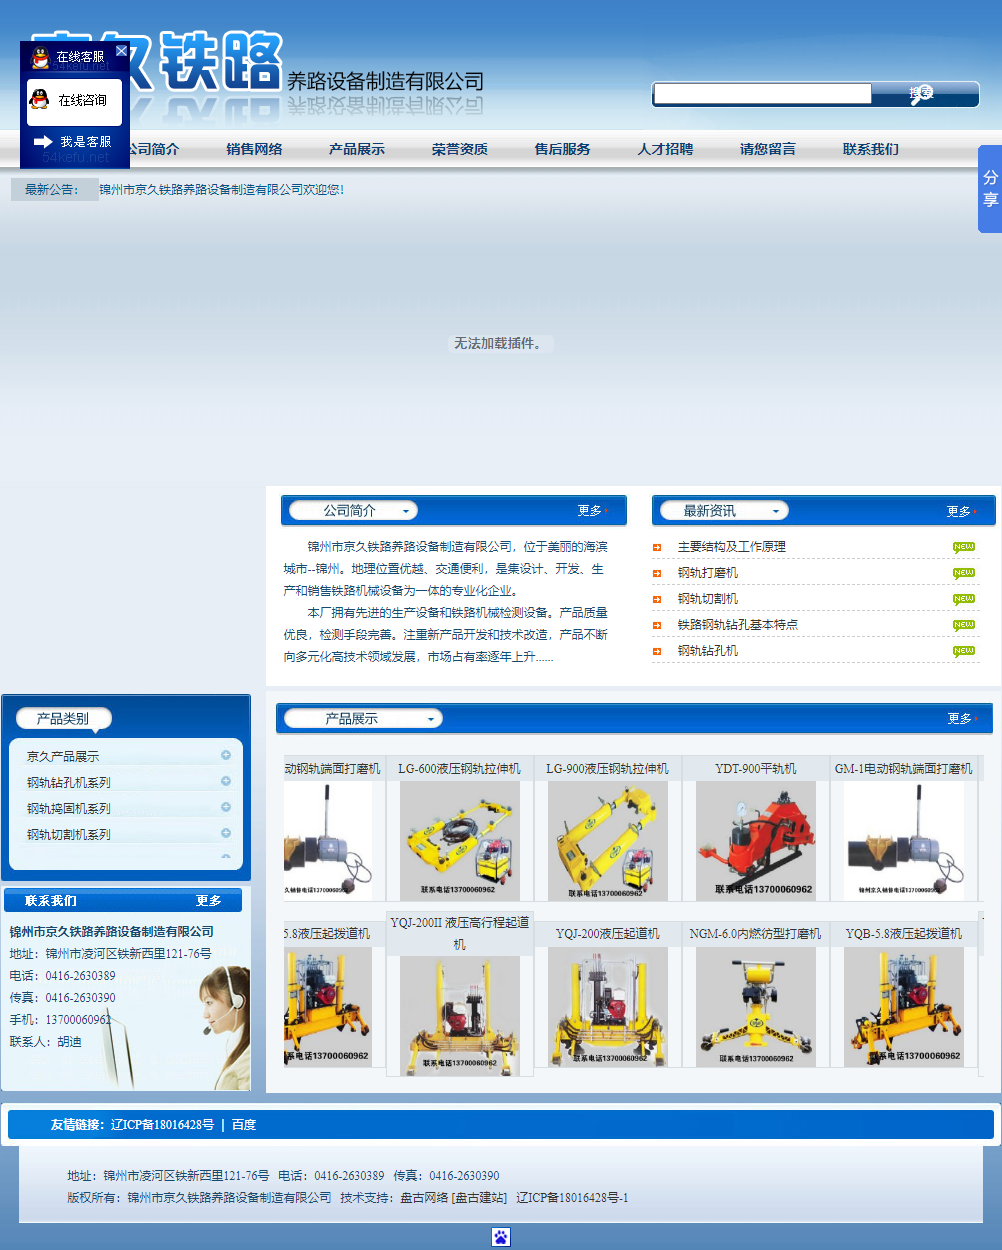 锦州市京久铁路养路设备制造有限公司网站案例